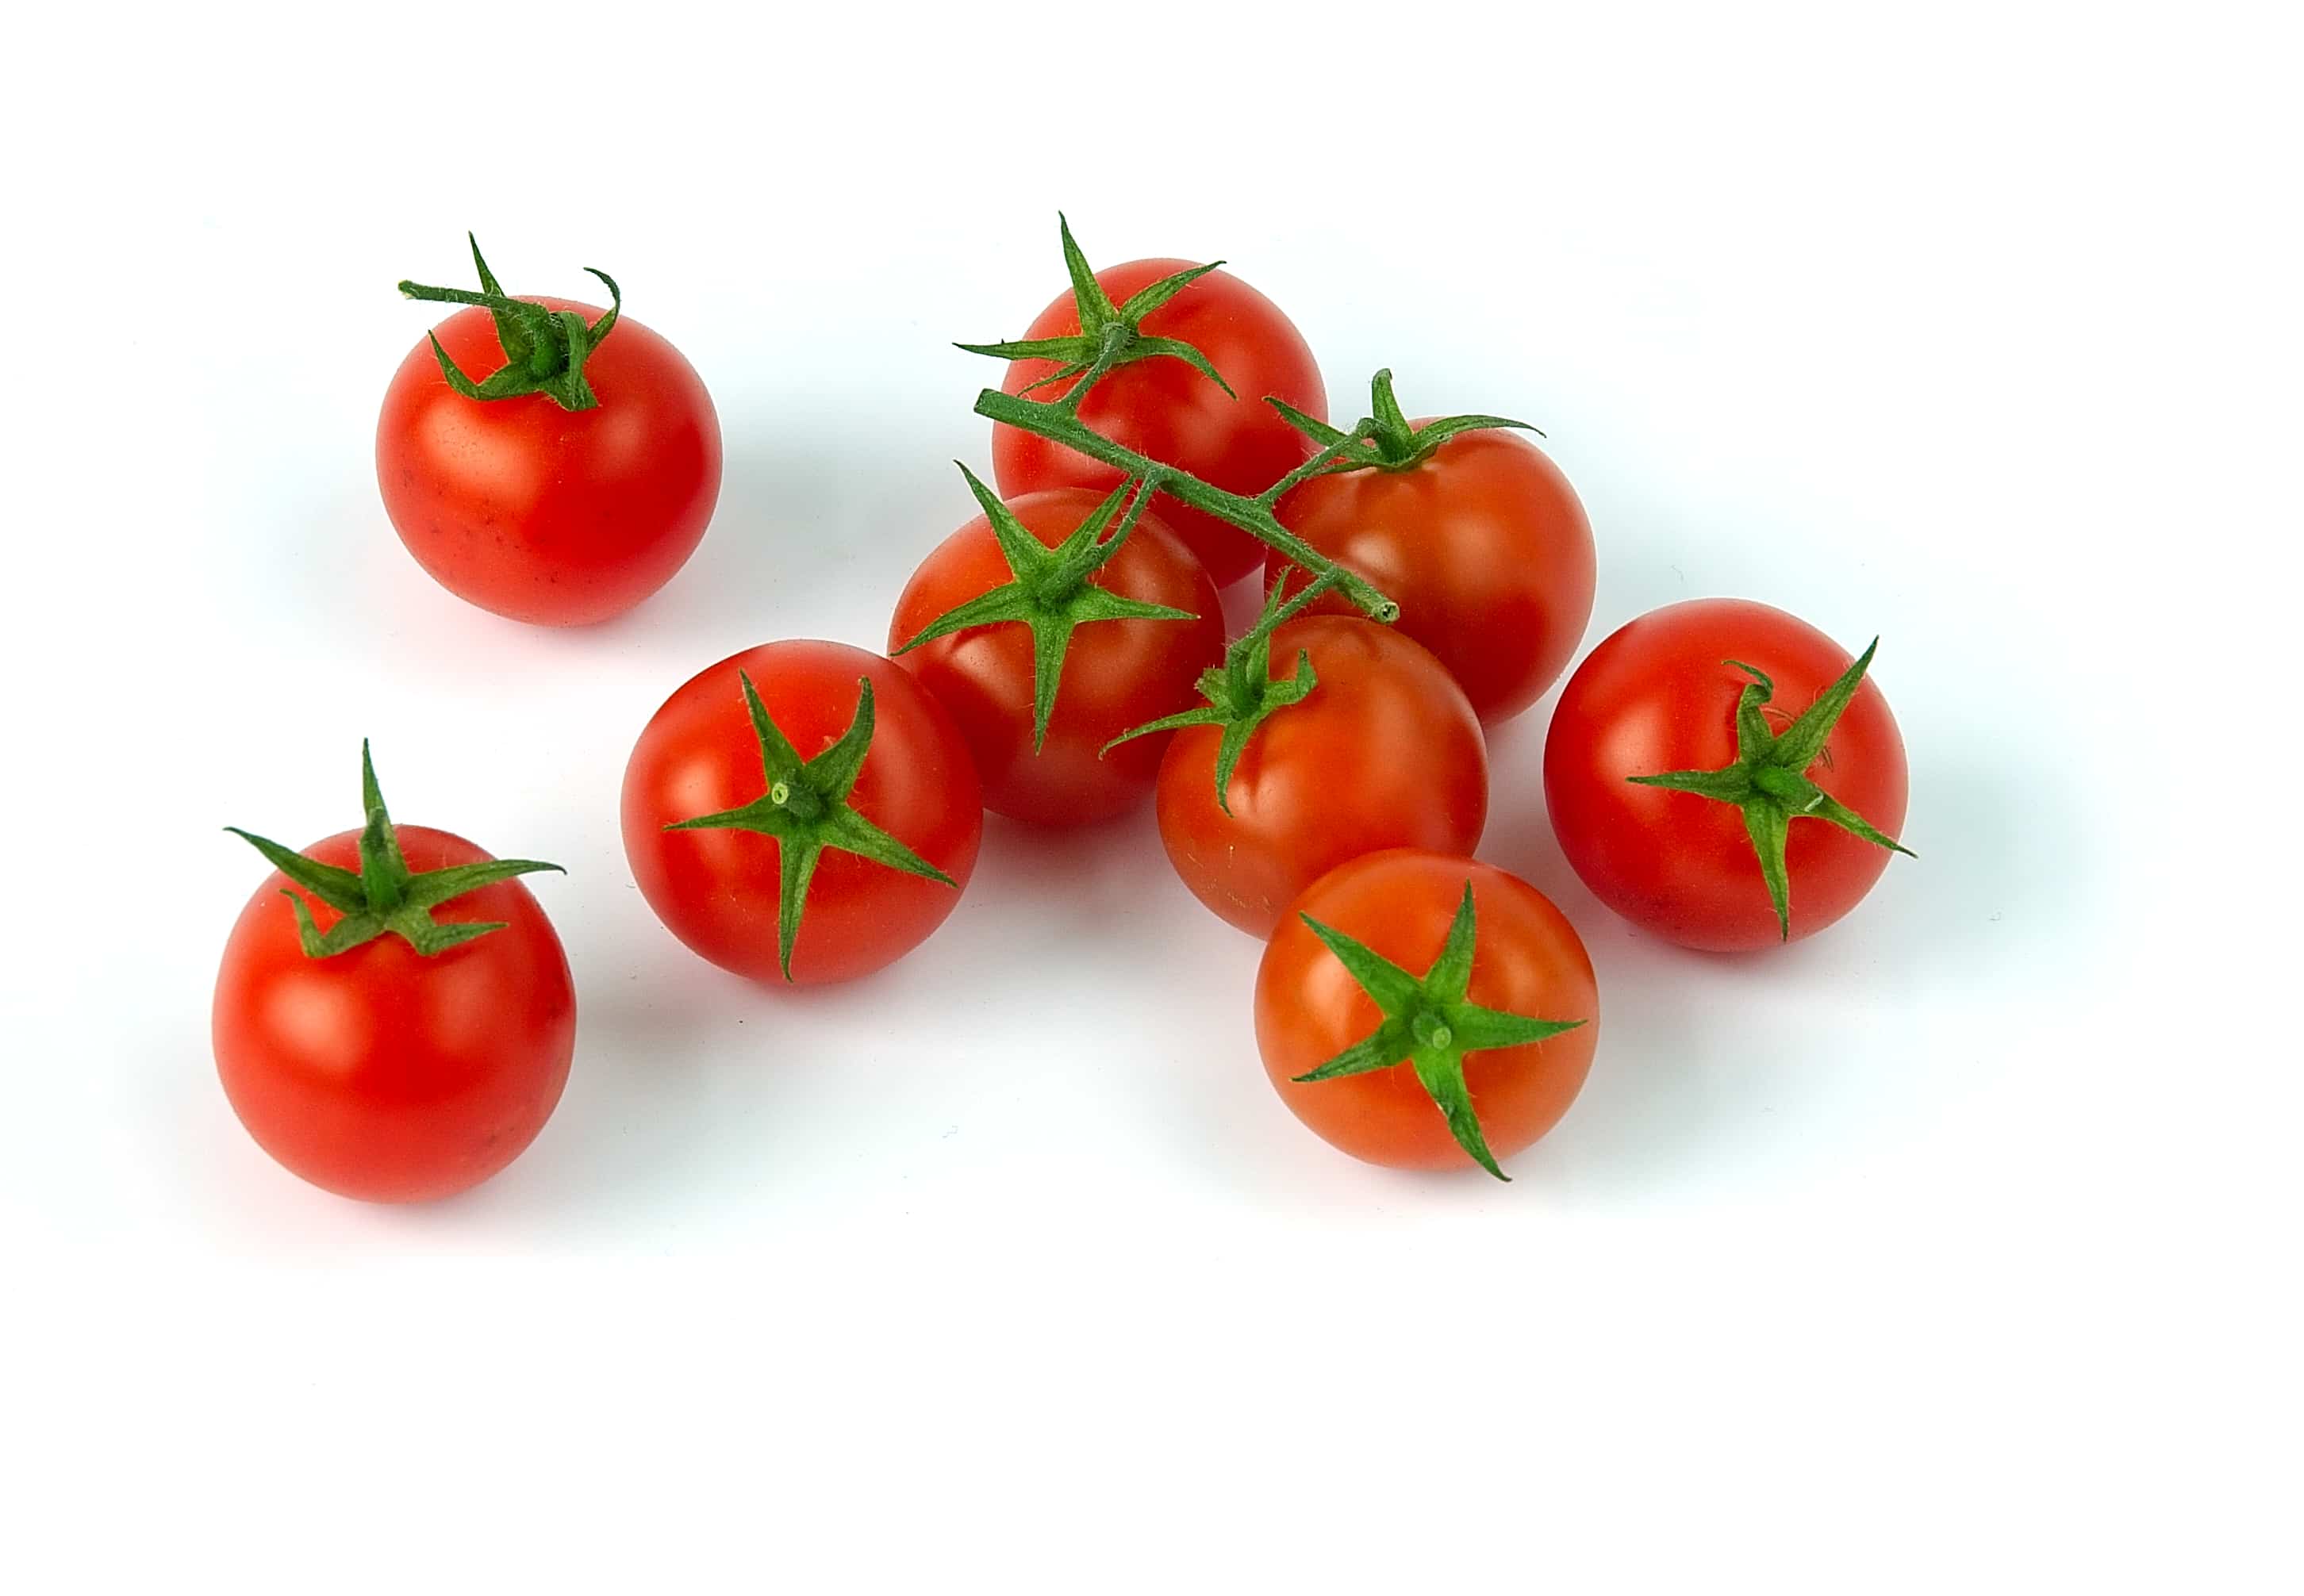 Semillas del tomate: ¿cómo conseguirlas fácilmente?